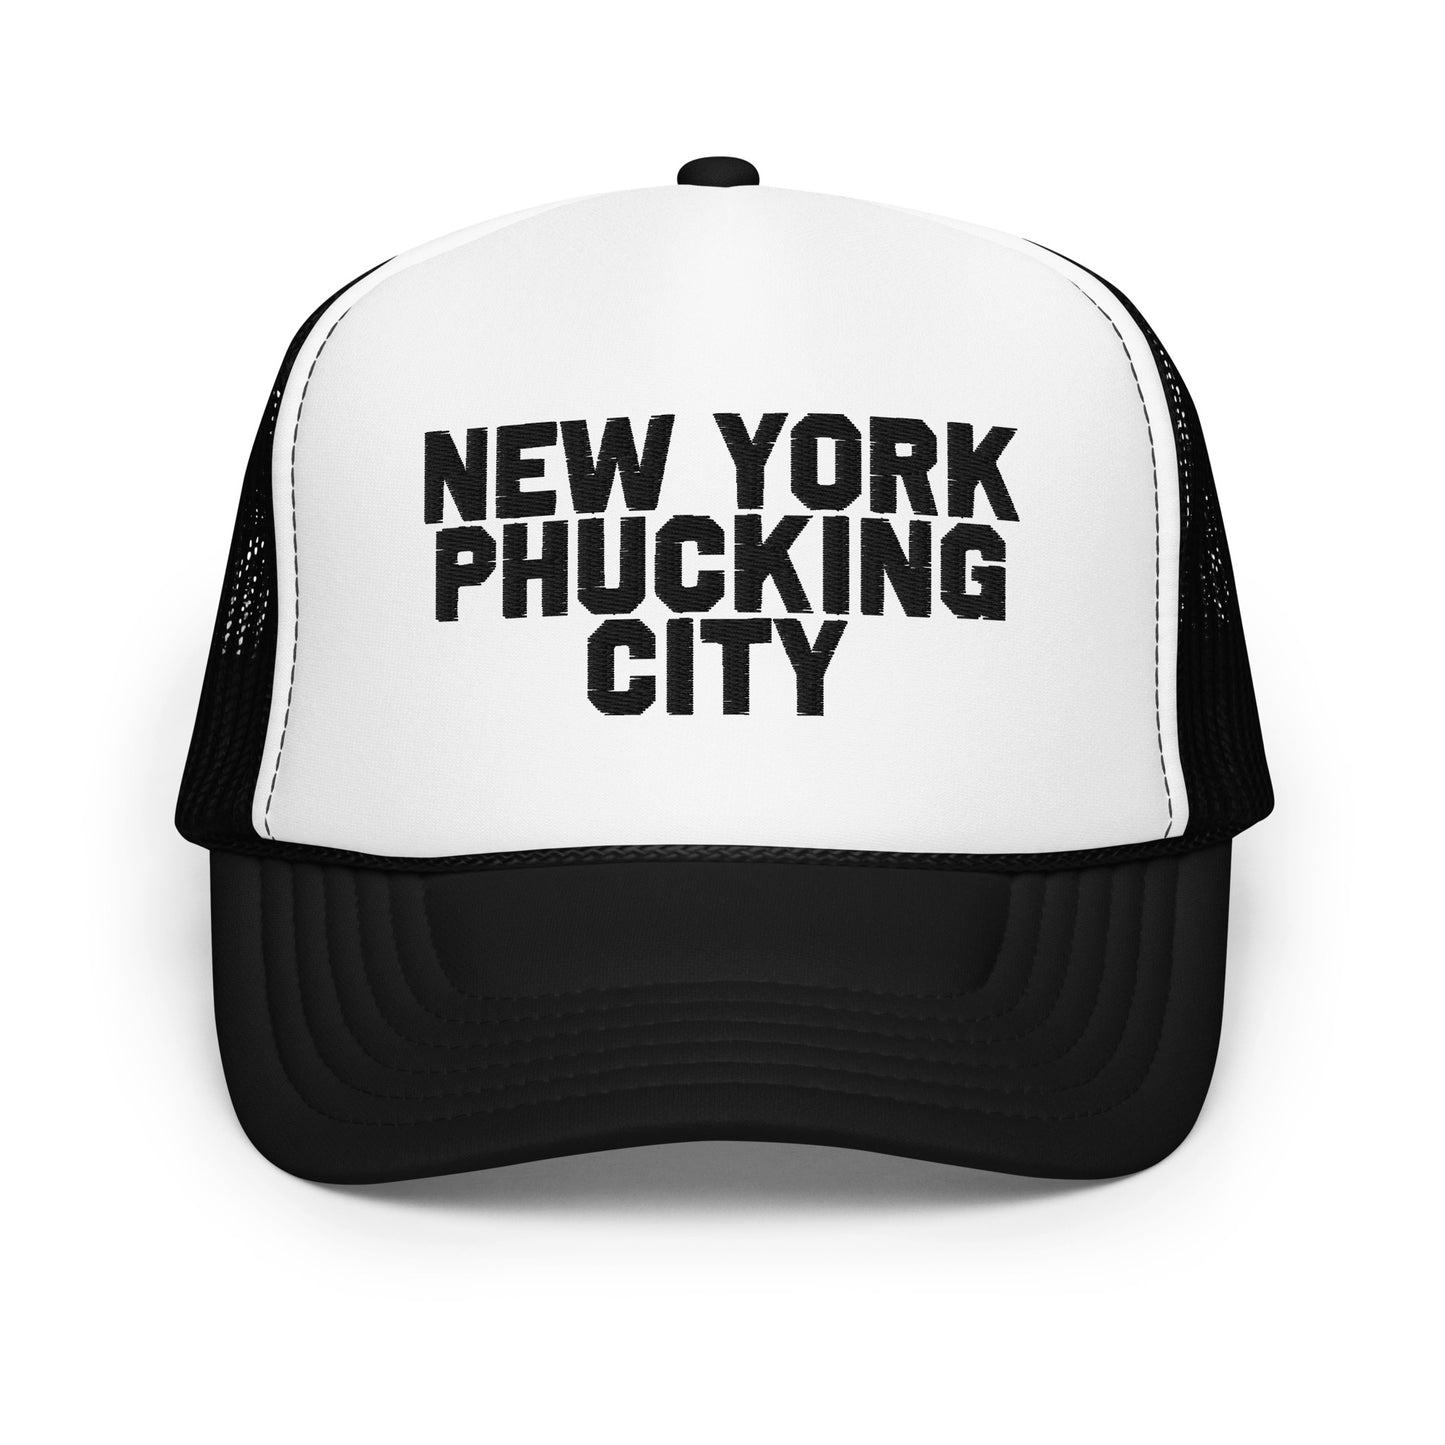 New York Phucking City Trucker Hat